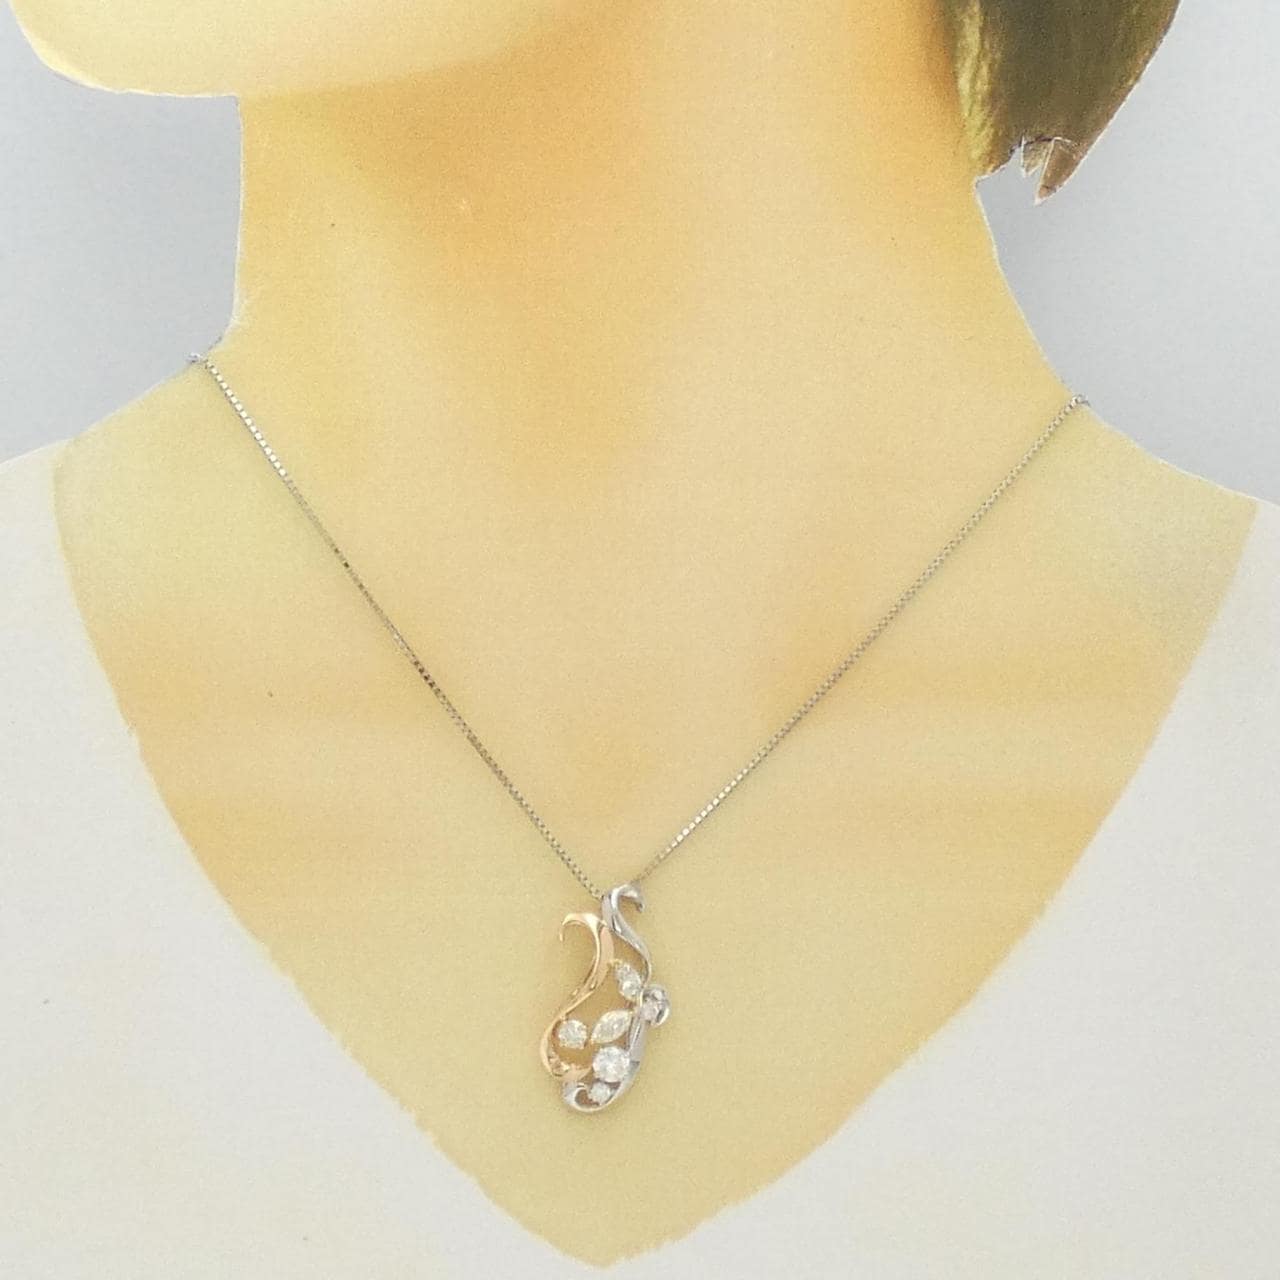 PT/K18PG/K18 Diamond necklace 1.314CT